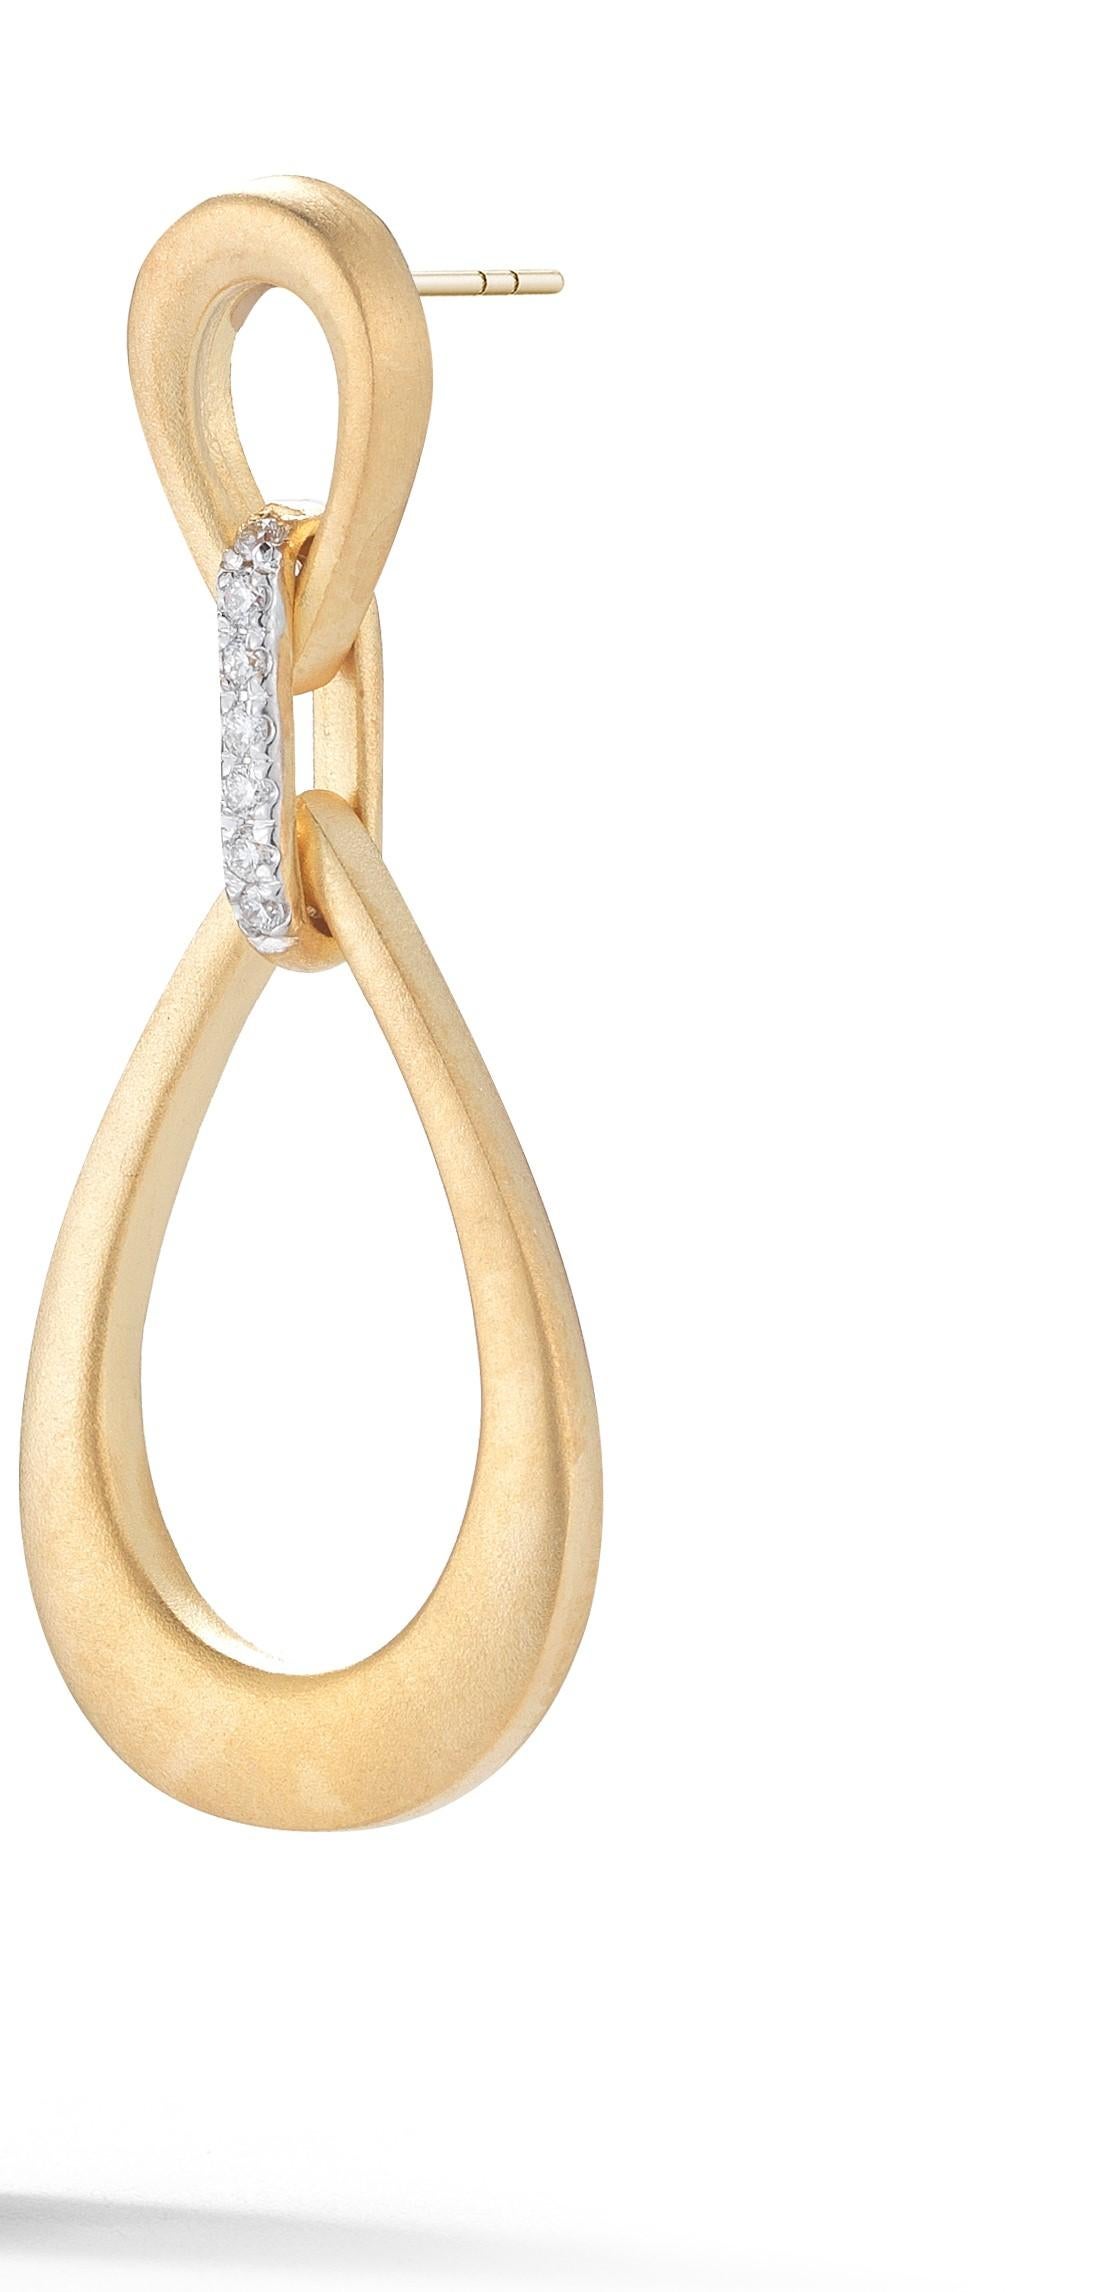 boucles d'oreilles pendantes en or jaune 14 carats, finition satinée à la main, petites et grandes perles de diamant, serties de diamants de 0,14 carat sur une monture à friction.
